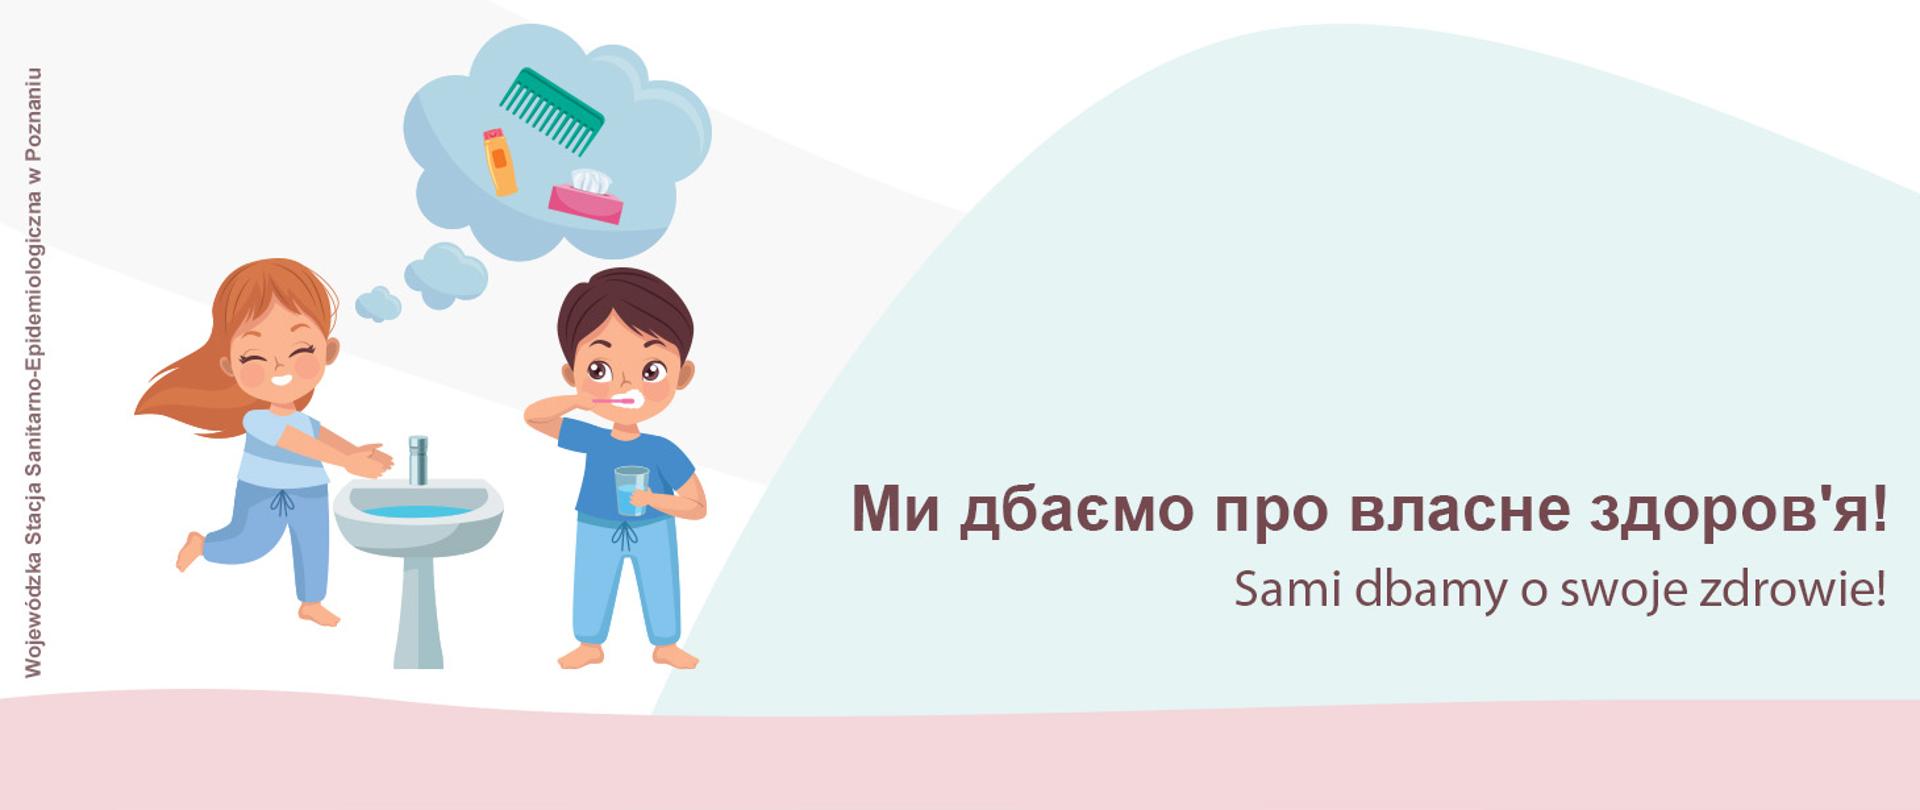 „Ми дбаємо про власне здоров'я! Sami dbamy o swoje zdrowie!” baner z rysunkiem dzieci, dziewczynka myjąca ręce, chłopiec myjący zęby